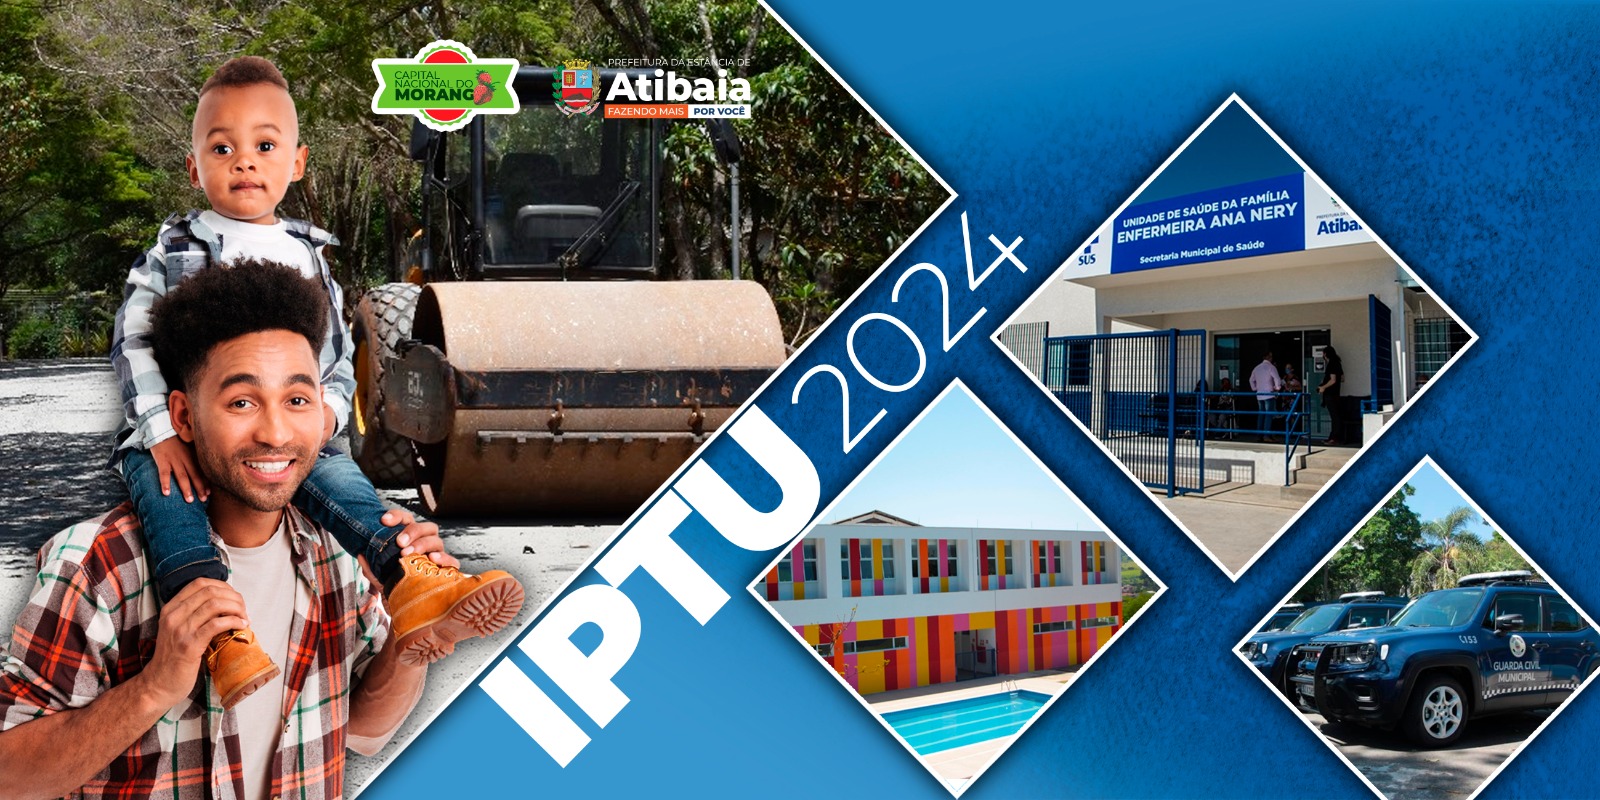 Prefeitura de Atibaia comunica incorreção no número de atendimento informado no carnê de IPTU